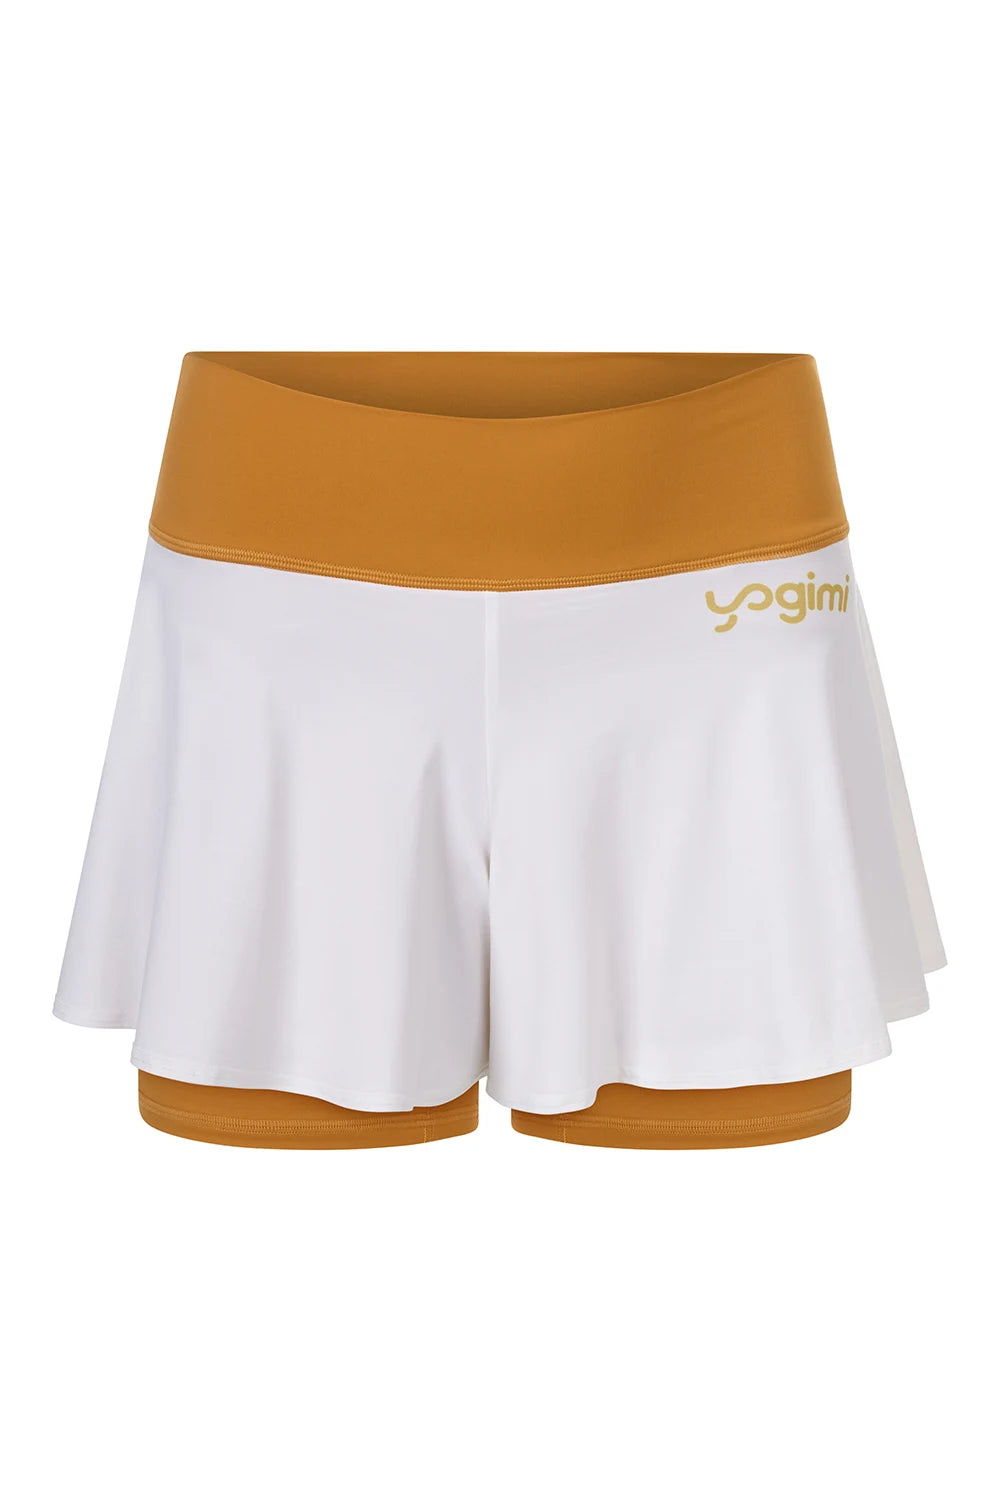 Silueta de pantalones cortos de yoga de Yogimi en color mostaza con capa blanca. Modelo Prana Inca Gold-White